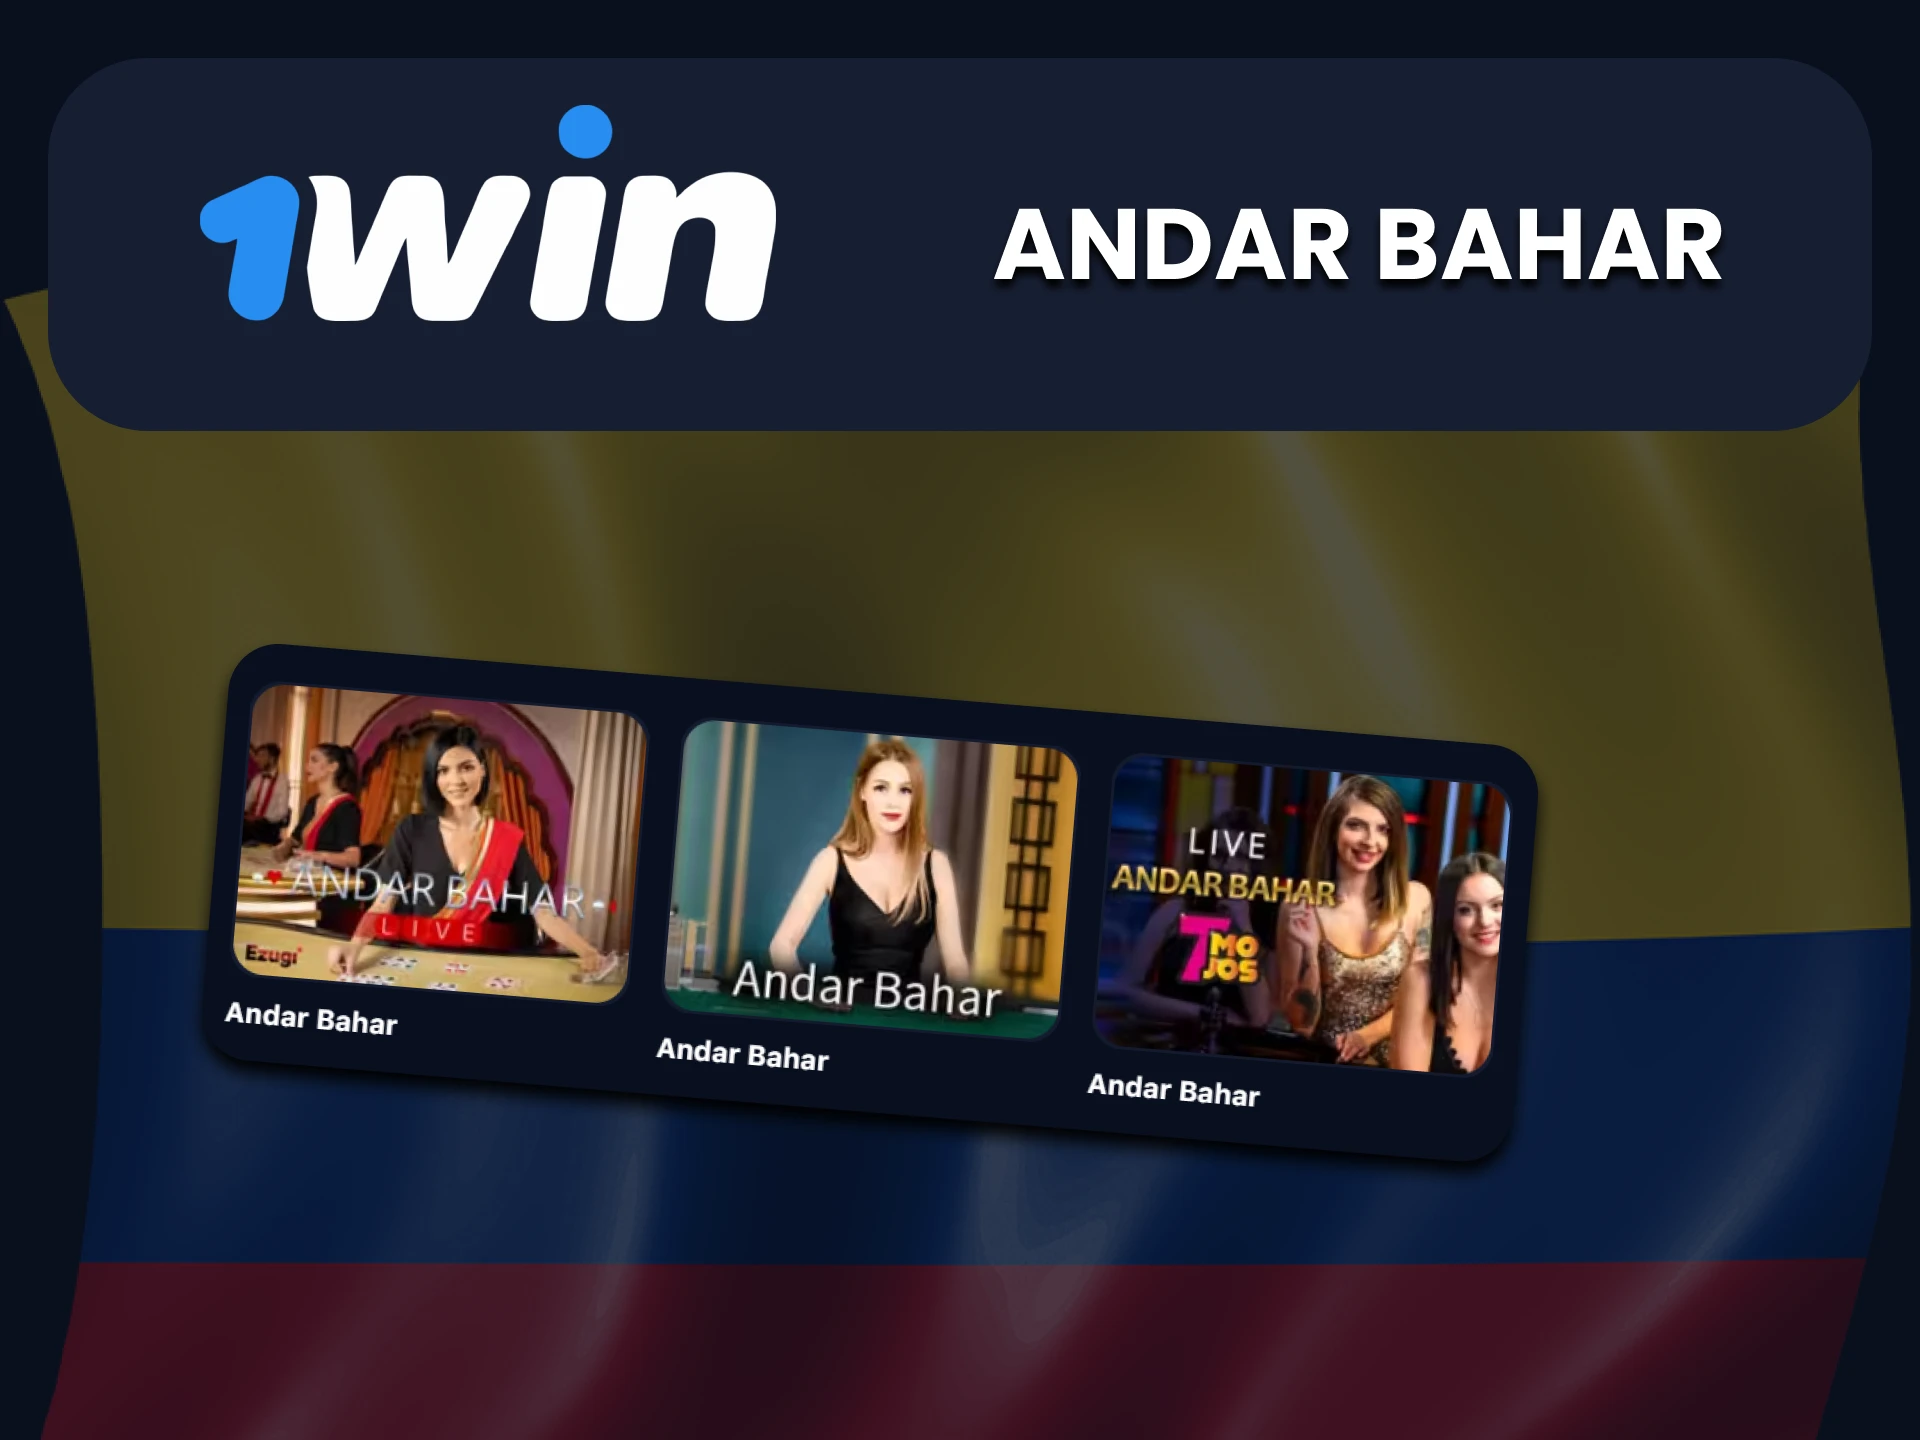 Juega al Andar Bahar en la sección de casino en vivo con 1win.